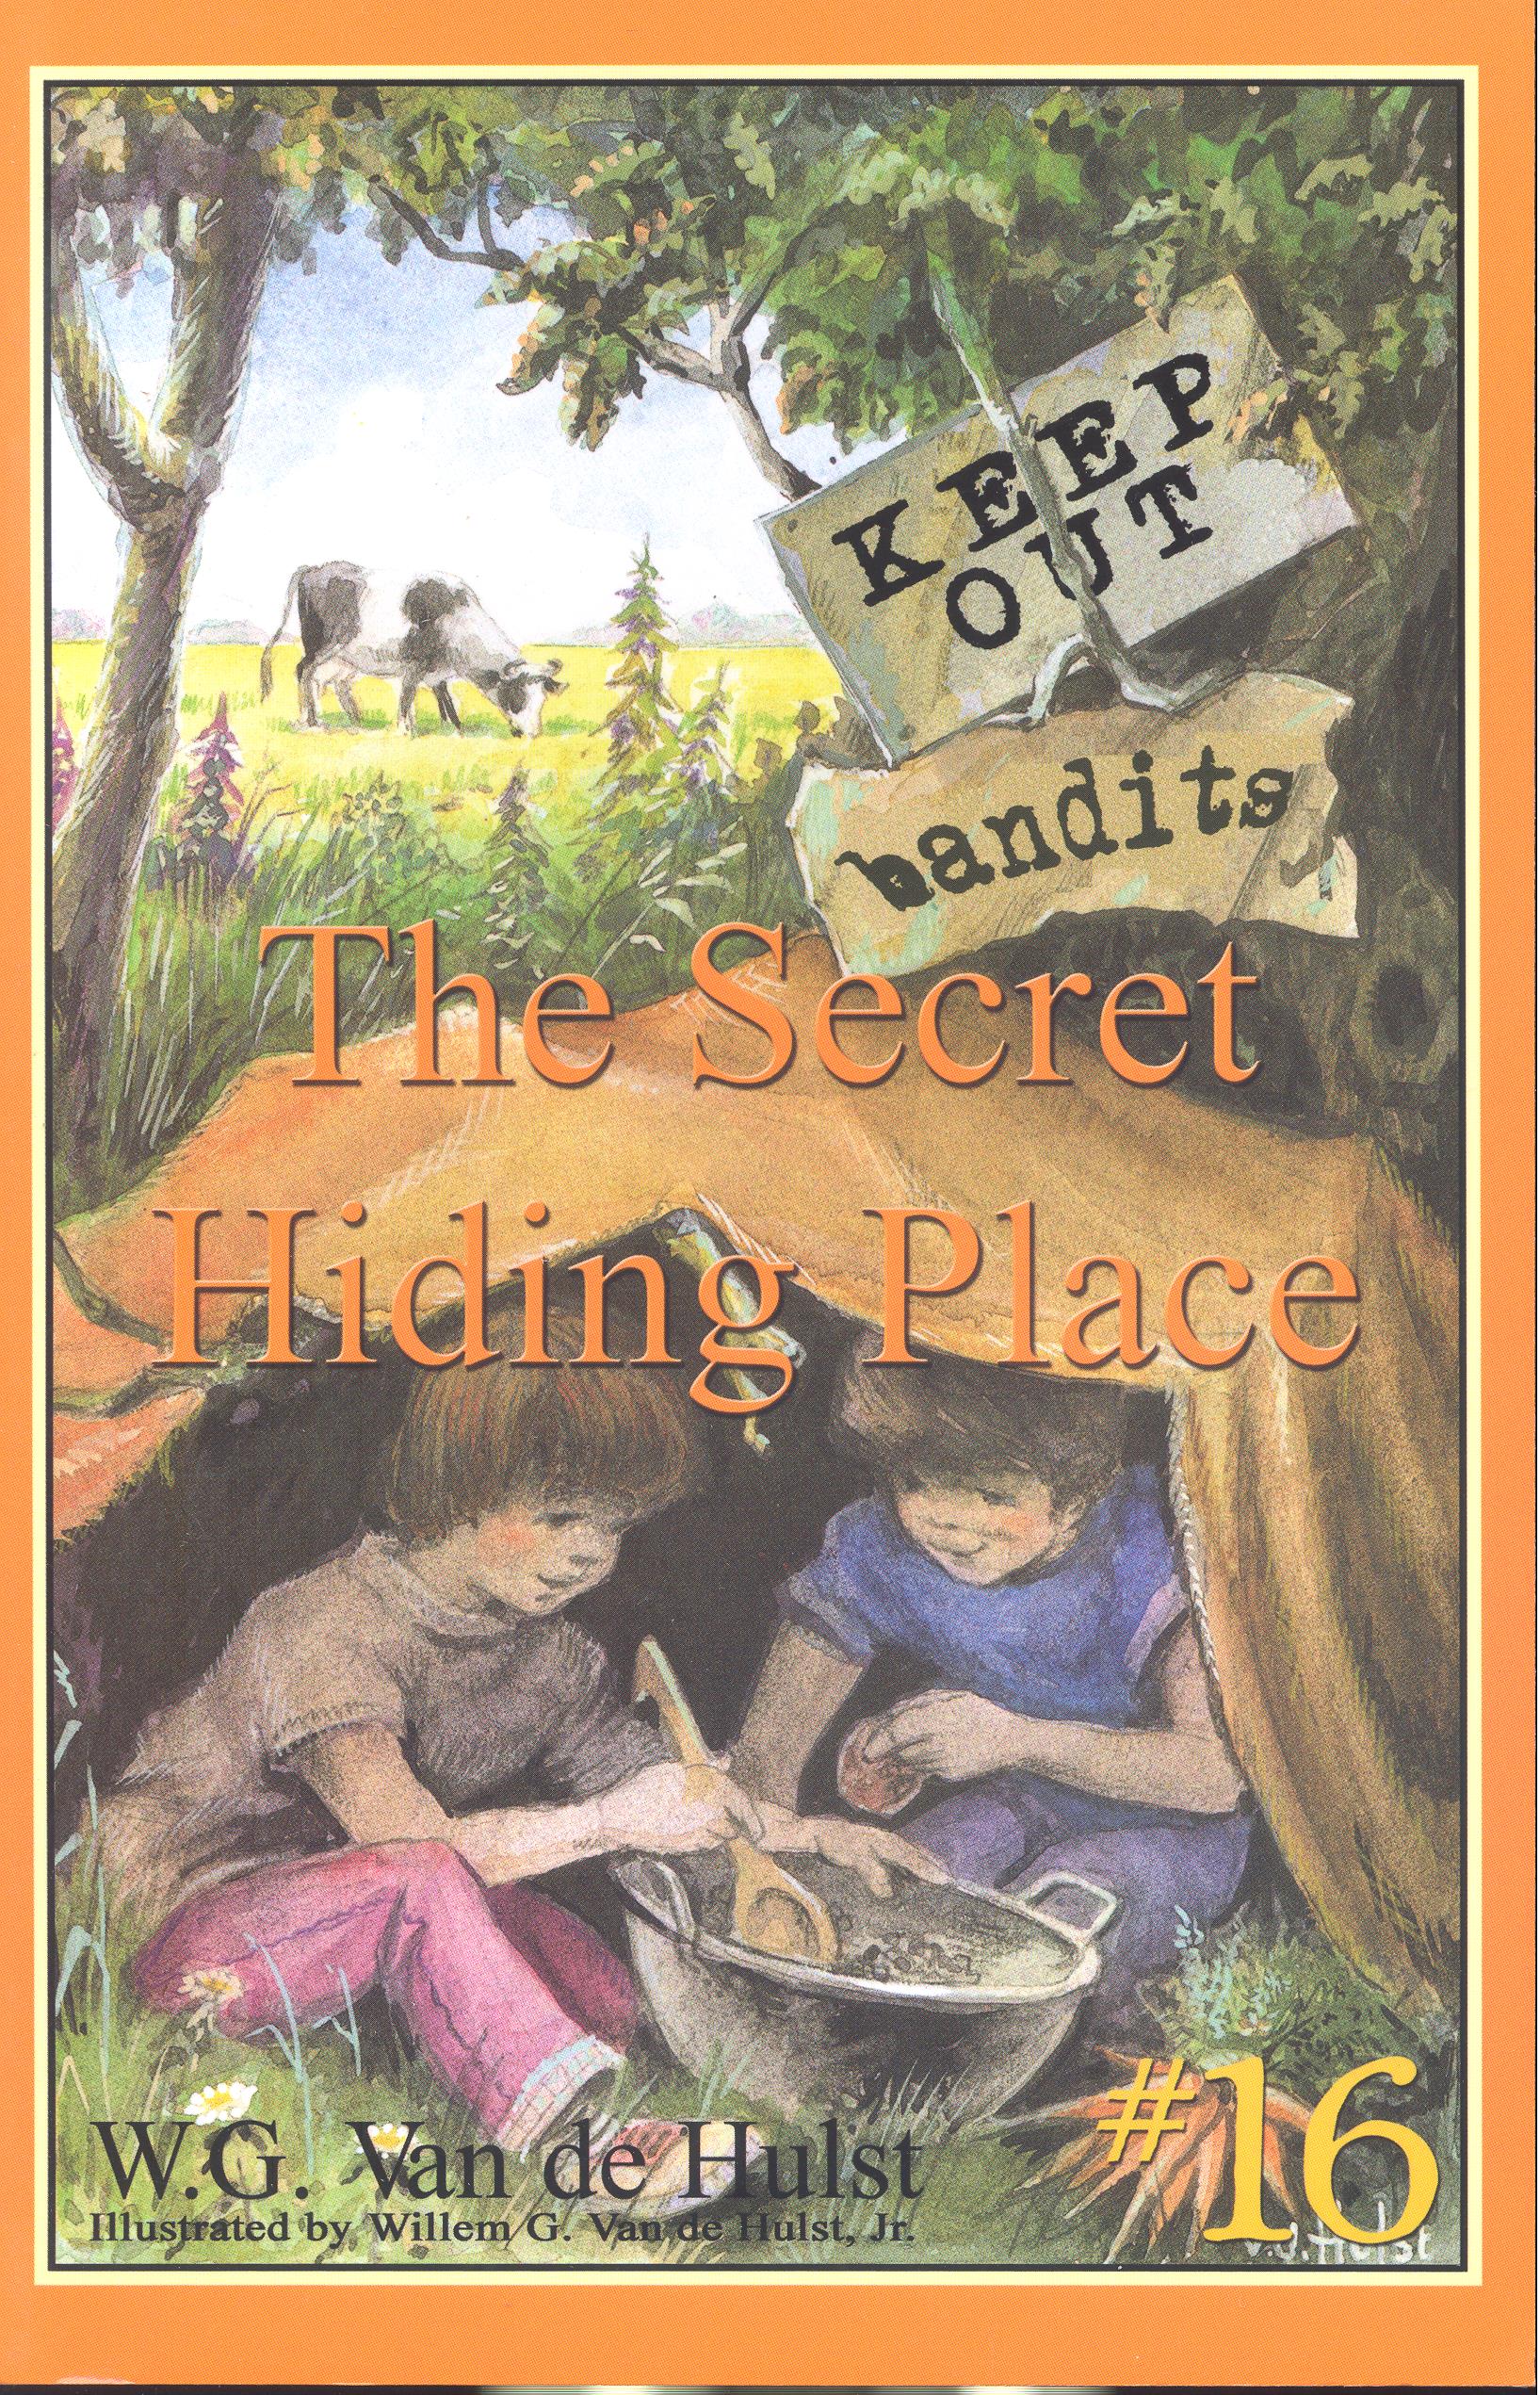 the secret place novel